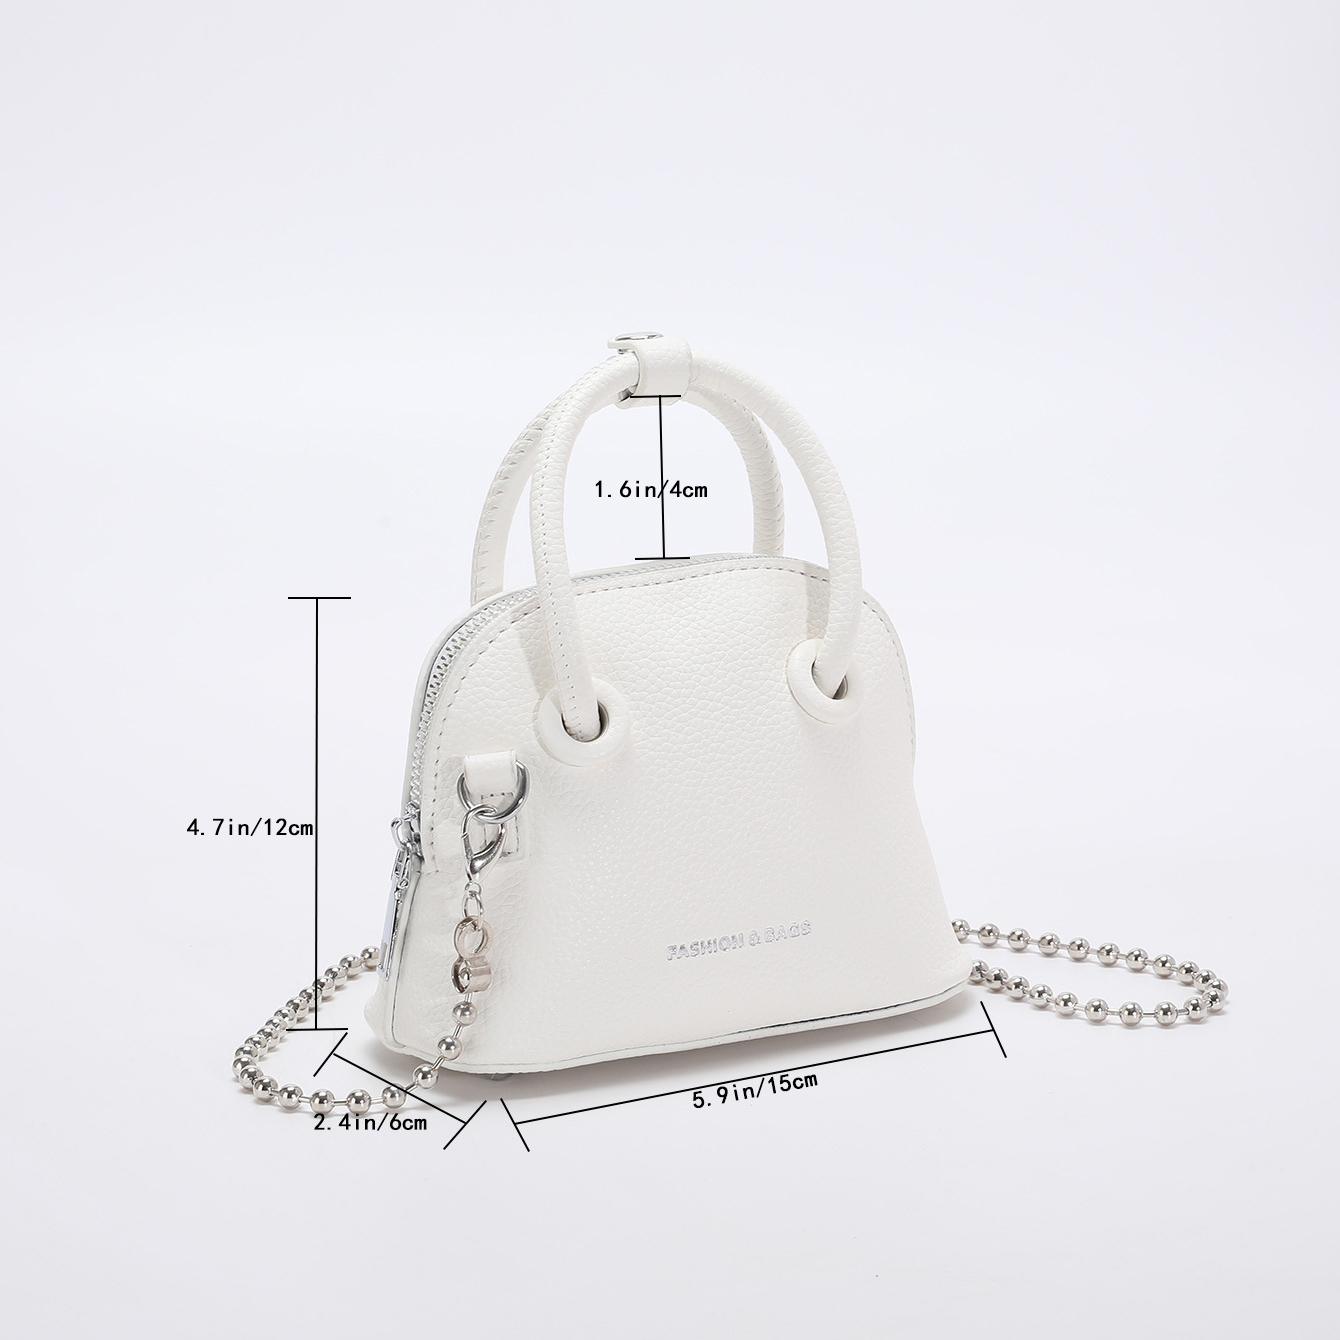 Balenciaga White Leather Ville XXS Dome Top Handle Handbag TEST